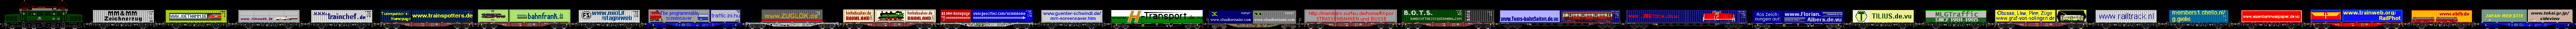 MM&MM Bildschirmschoner Zeichnerzug (73 KB .zip). Wenn Sie auch hier aufgenommen werden möchten, senden Sie bitte einfach eine Zeichnung Ihres Containers an Pierre@trainspotters.de